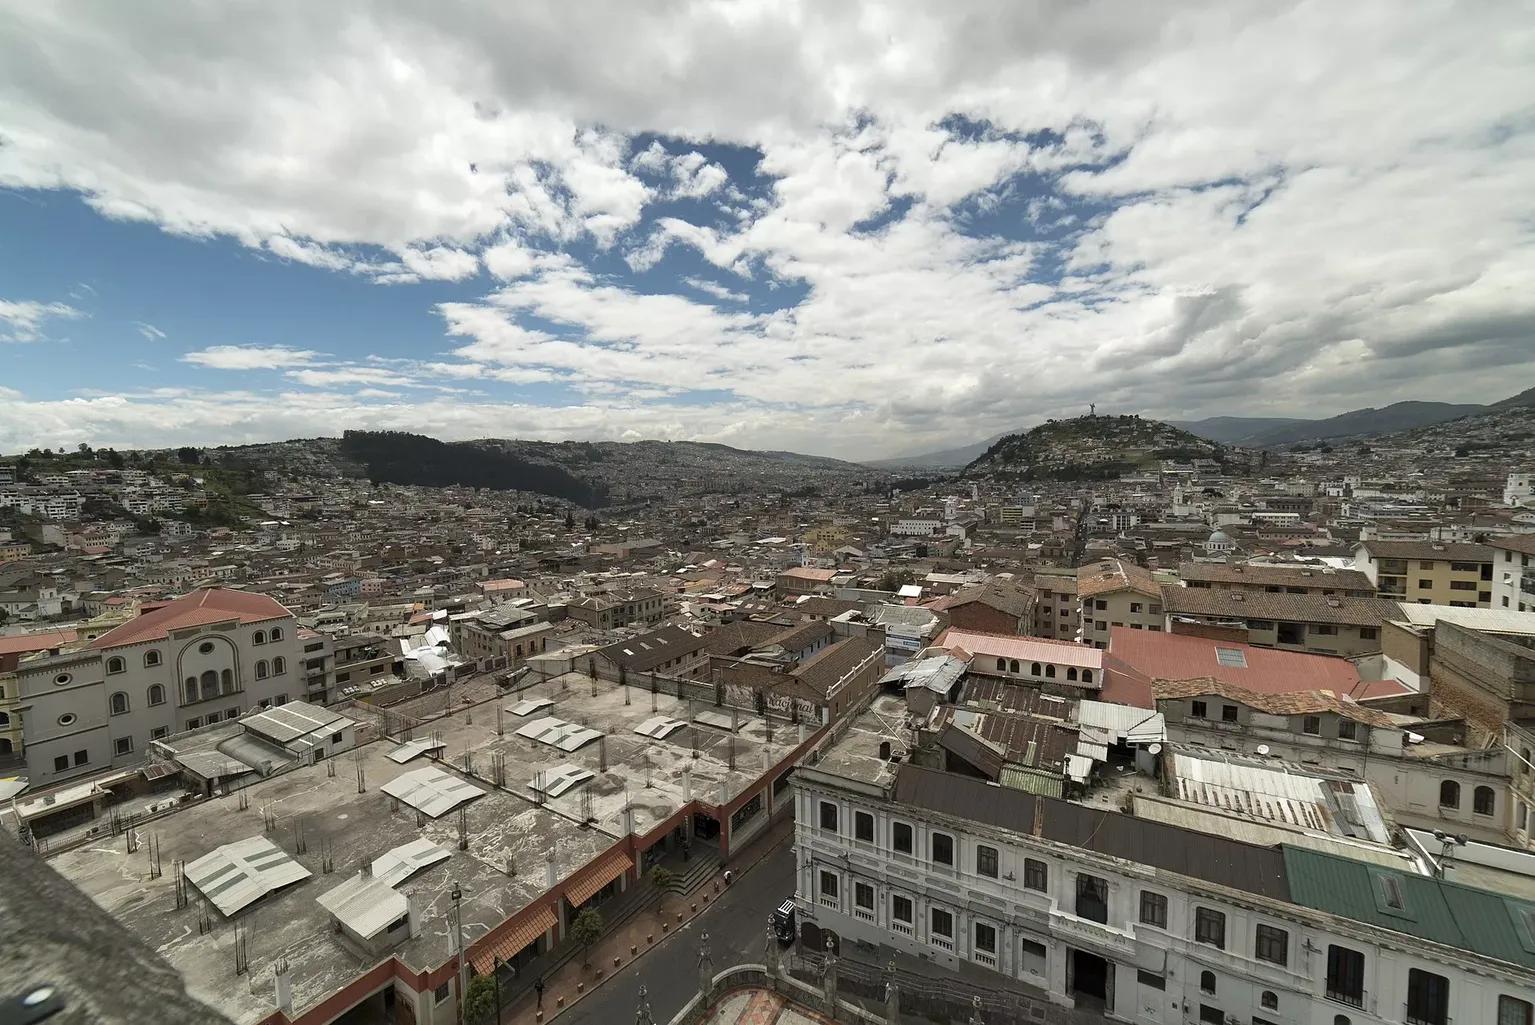 Quito | Pichincha Region, Ecuador - Rated 8.1